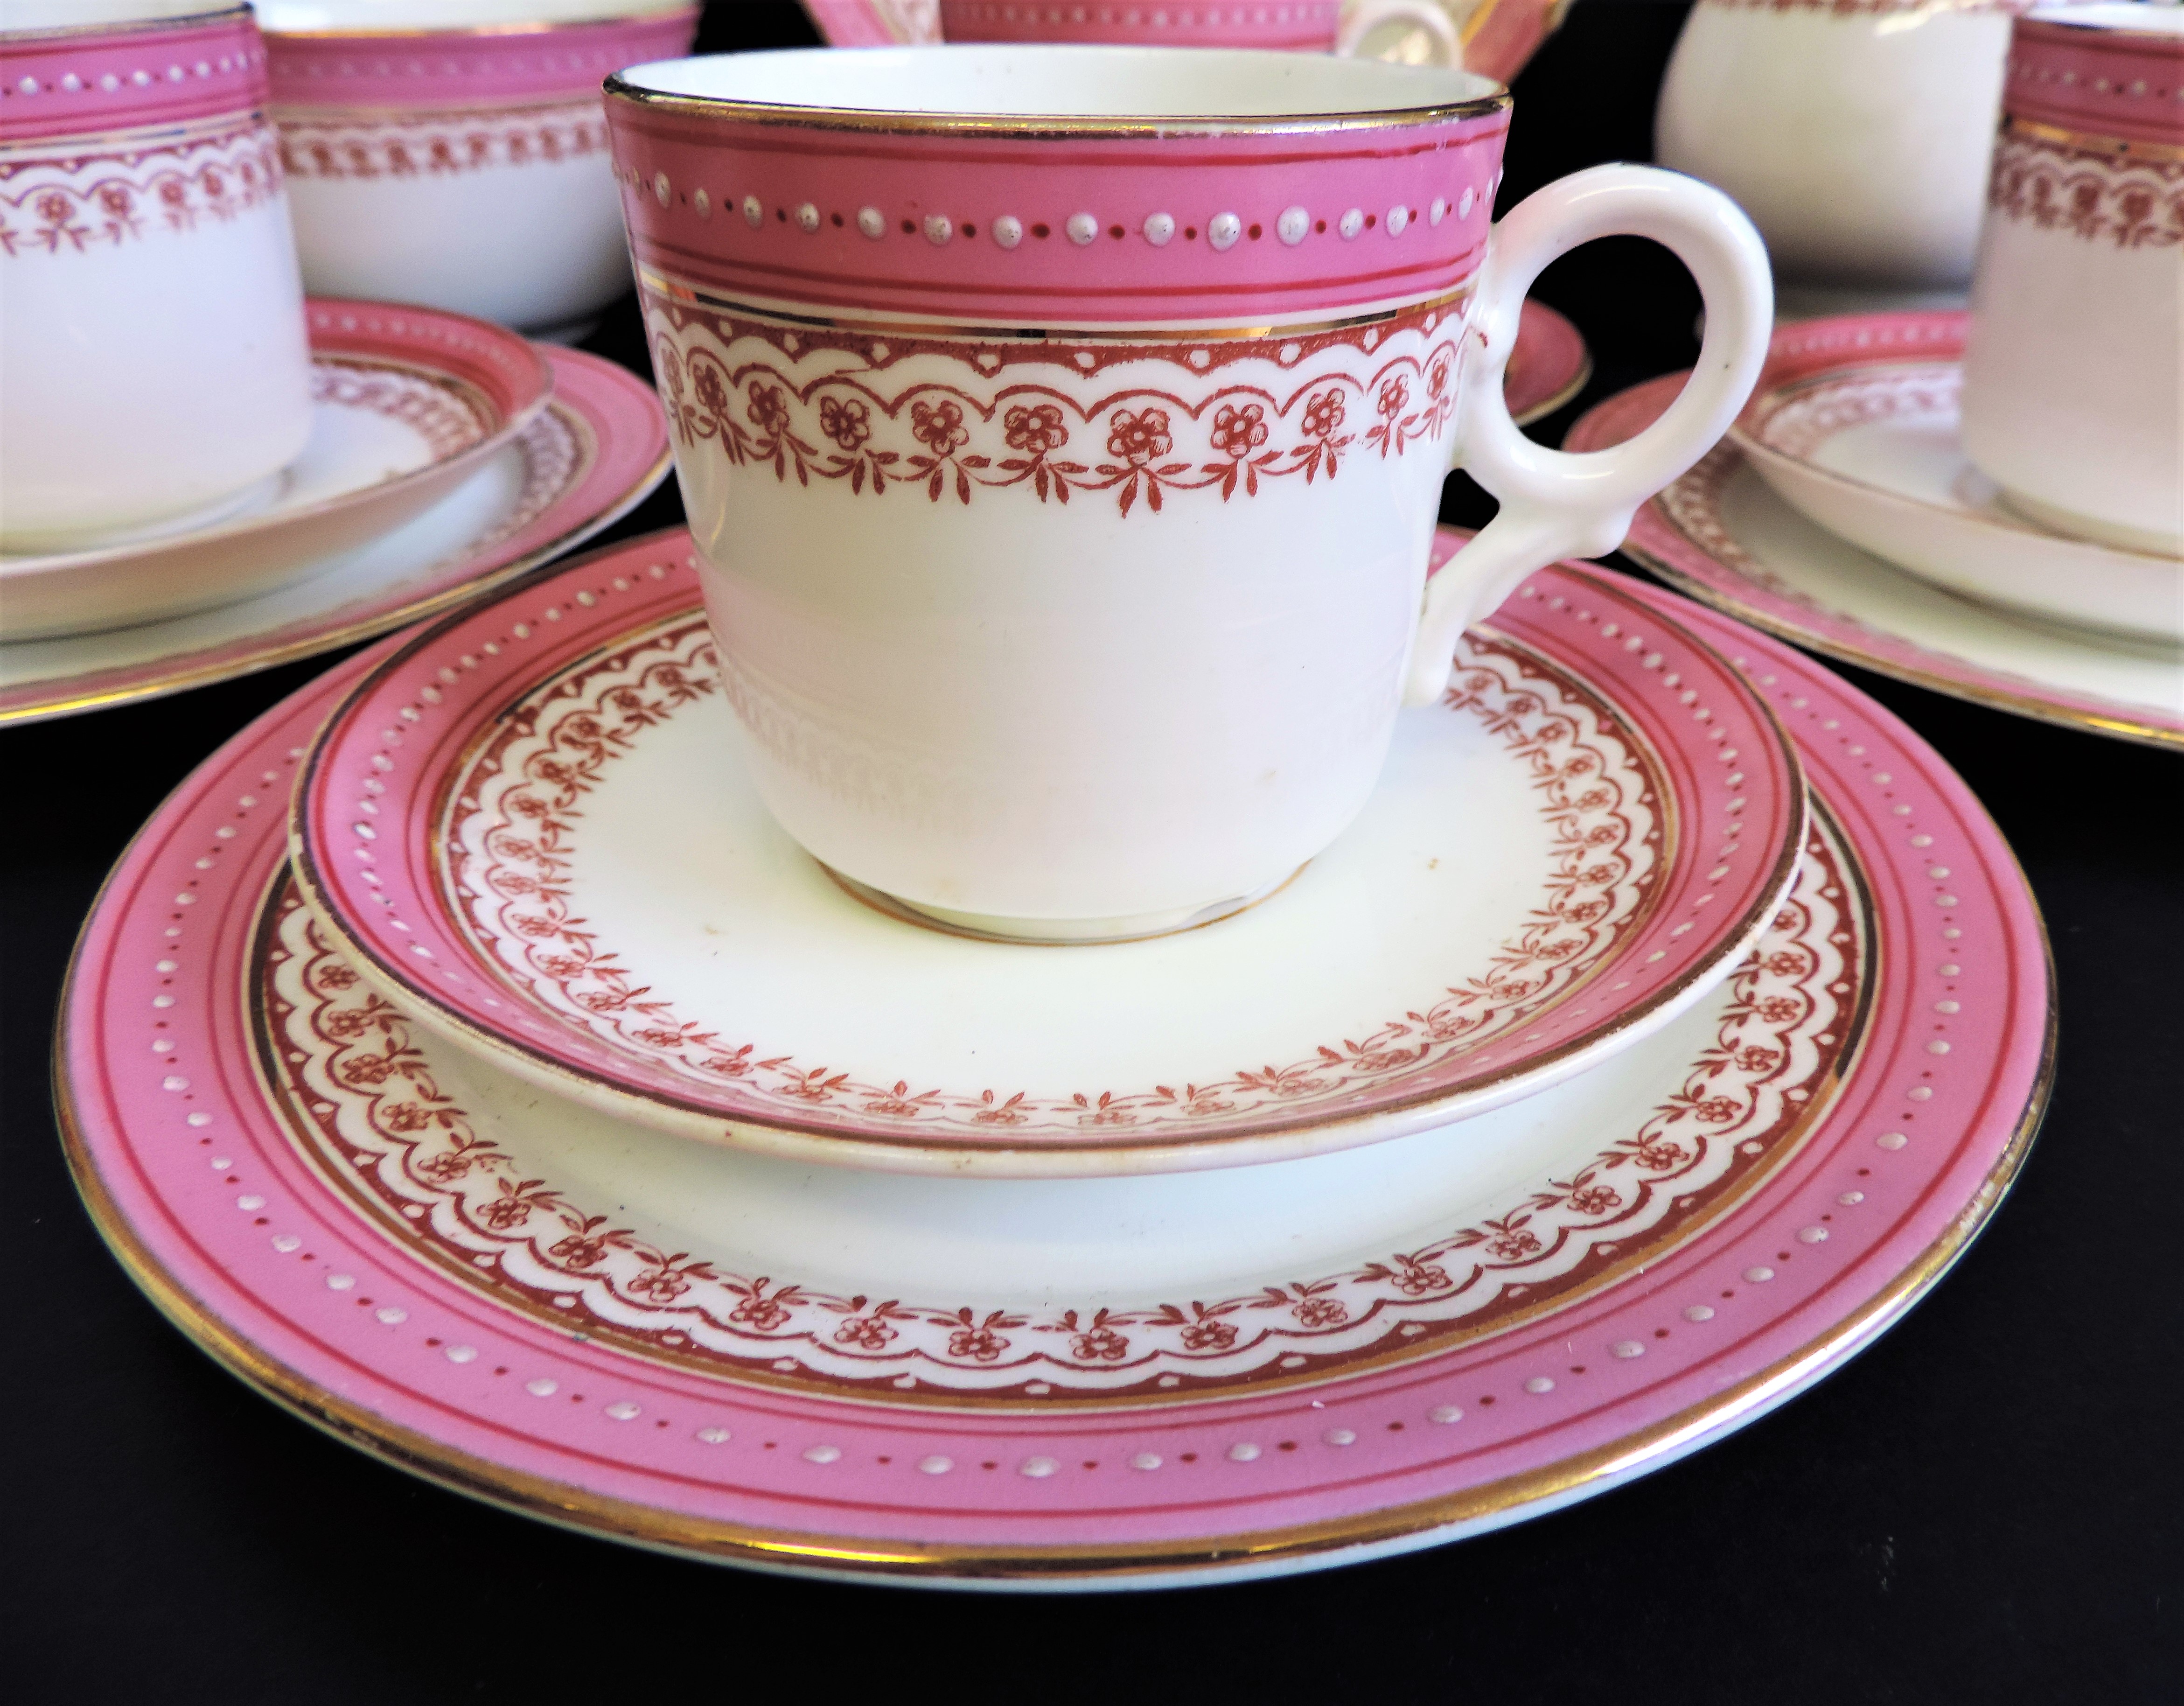 Vintage 19 piece Porcelain Breakfast/Tea Set for 4 People - Image 20 of 24